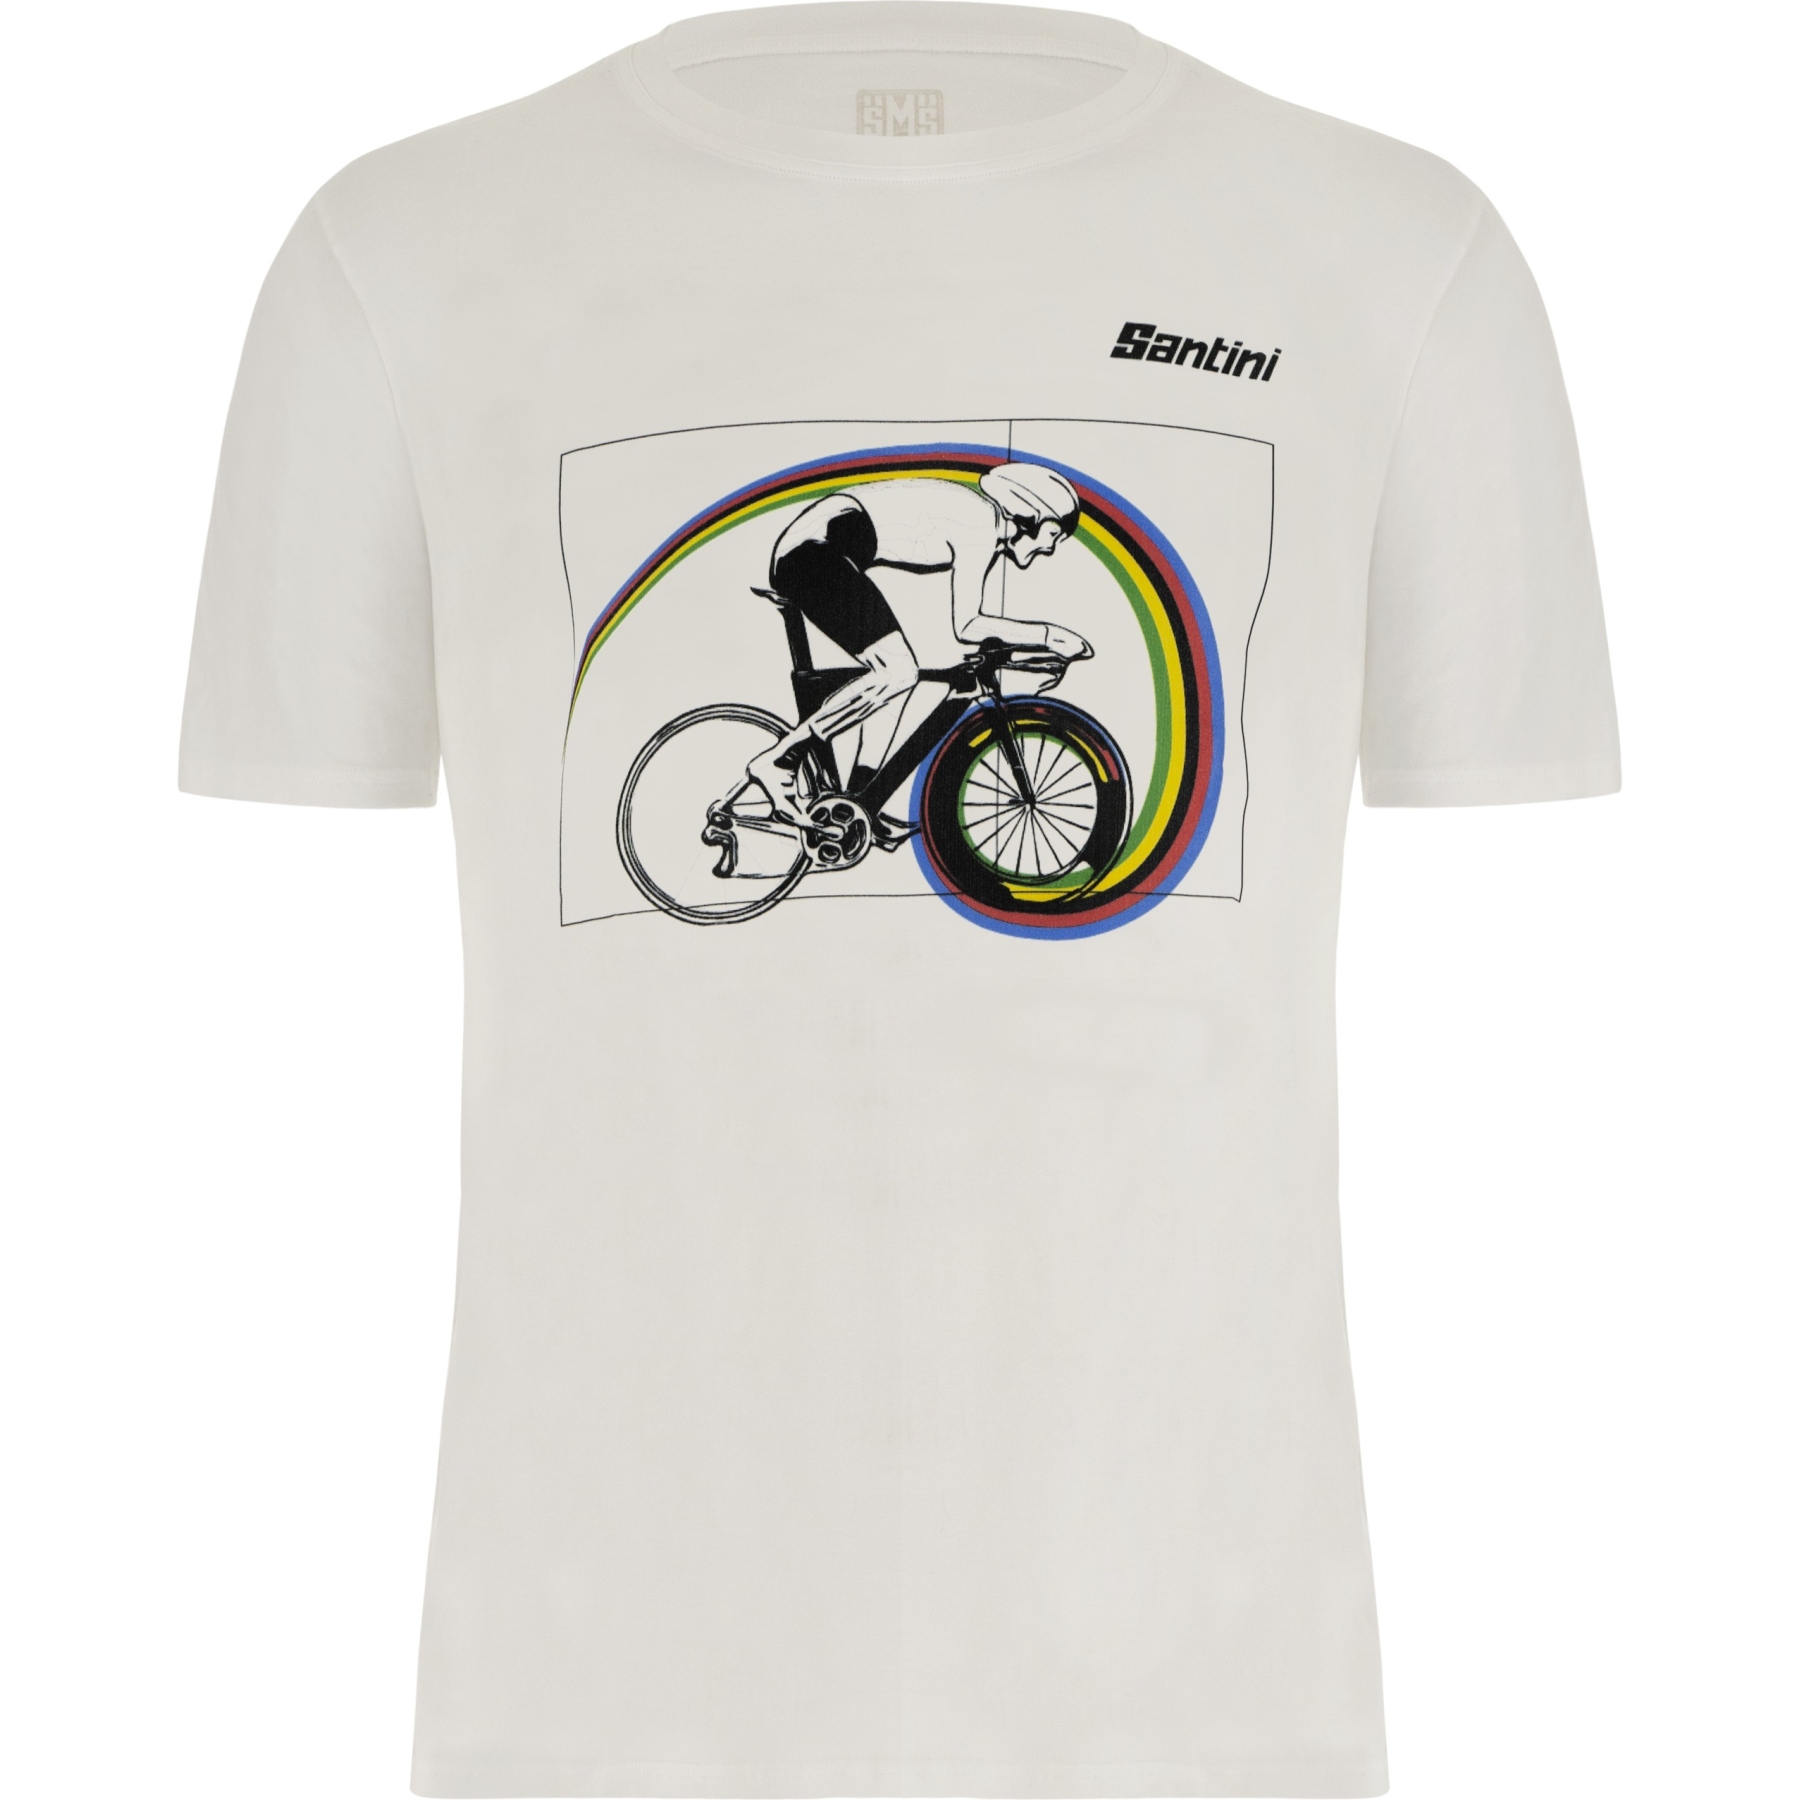 Bild von Santini UCI Crono TT T-Shirt - weiß BI